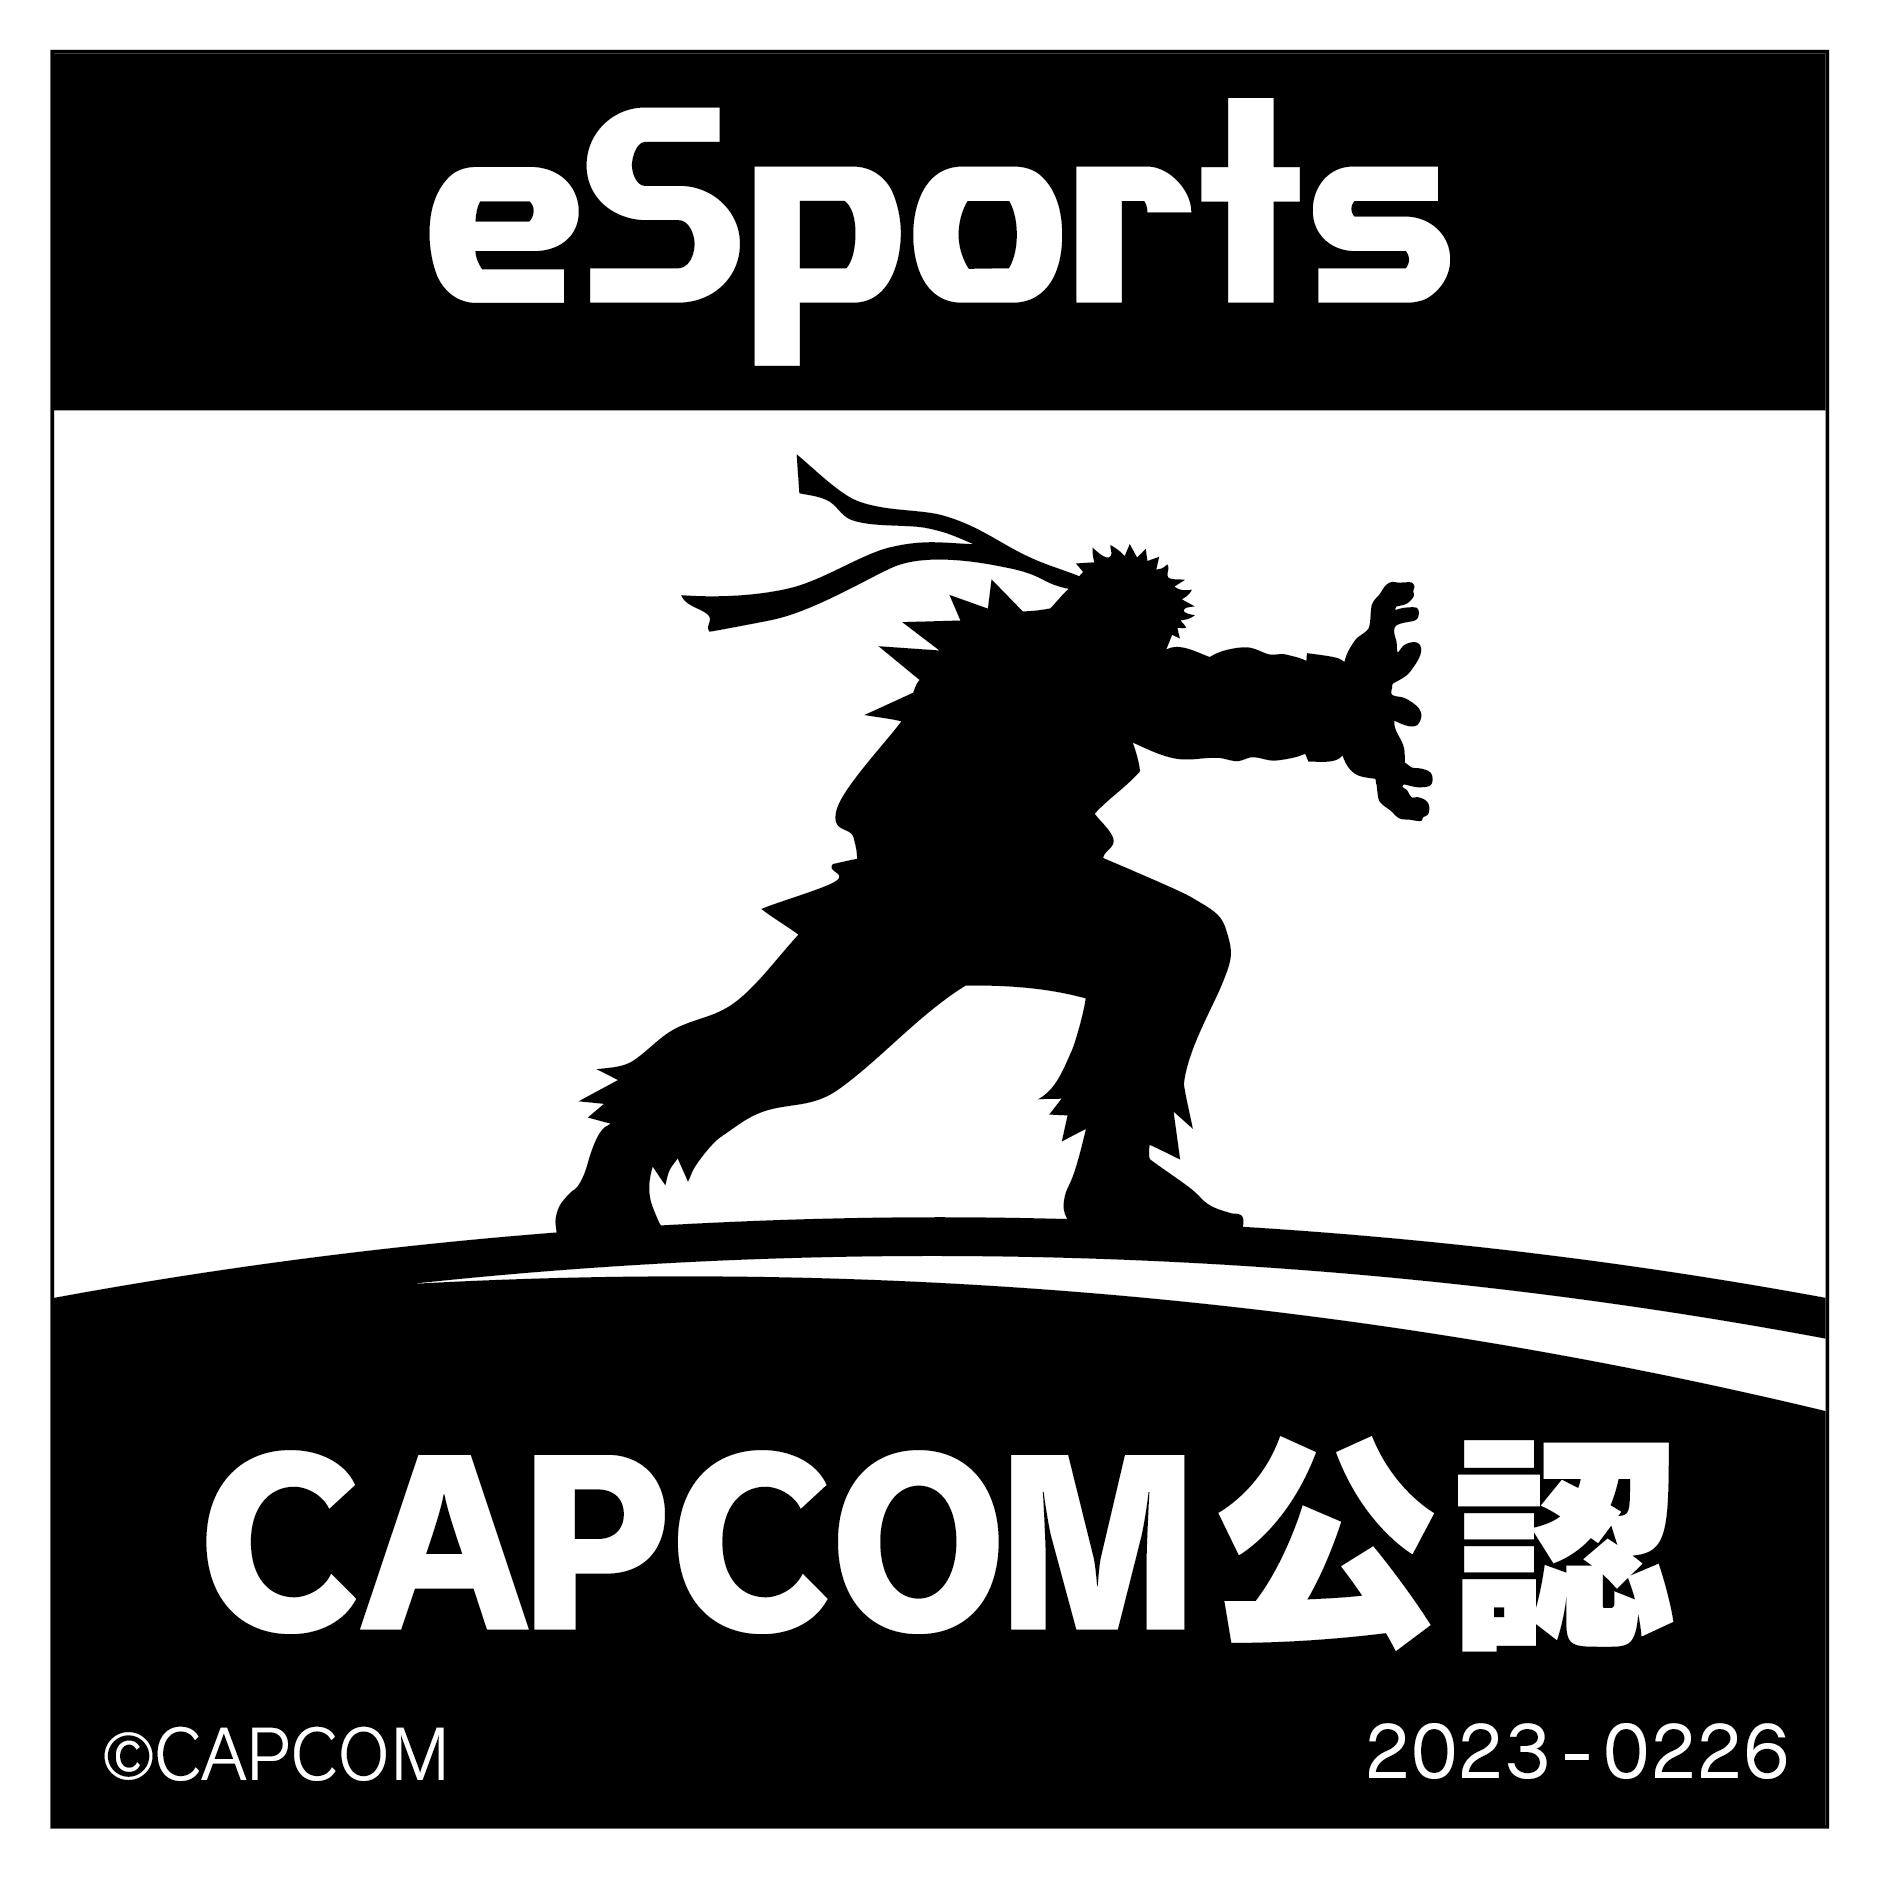 eSports CAPCOM公認 2023-0226